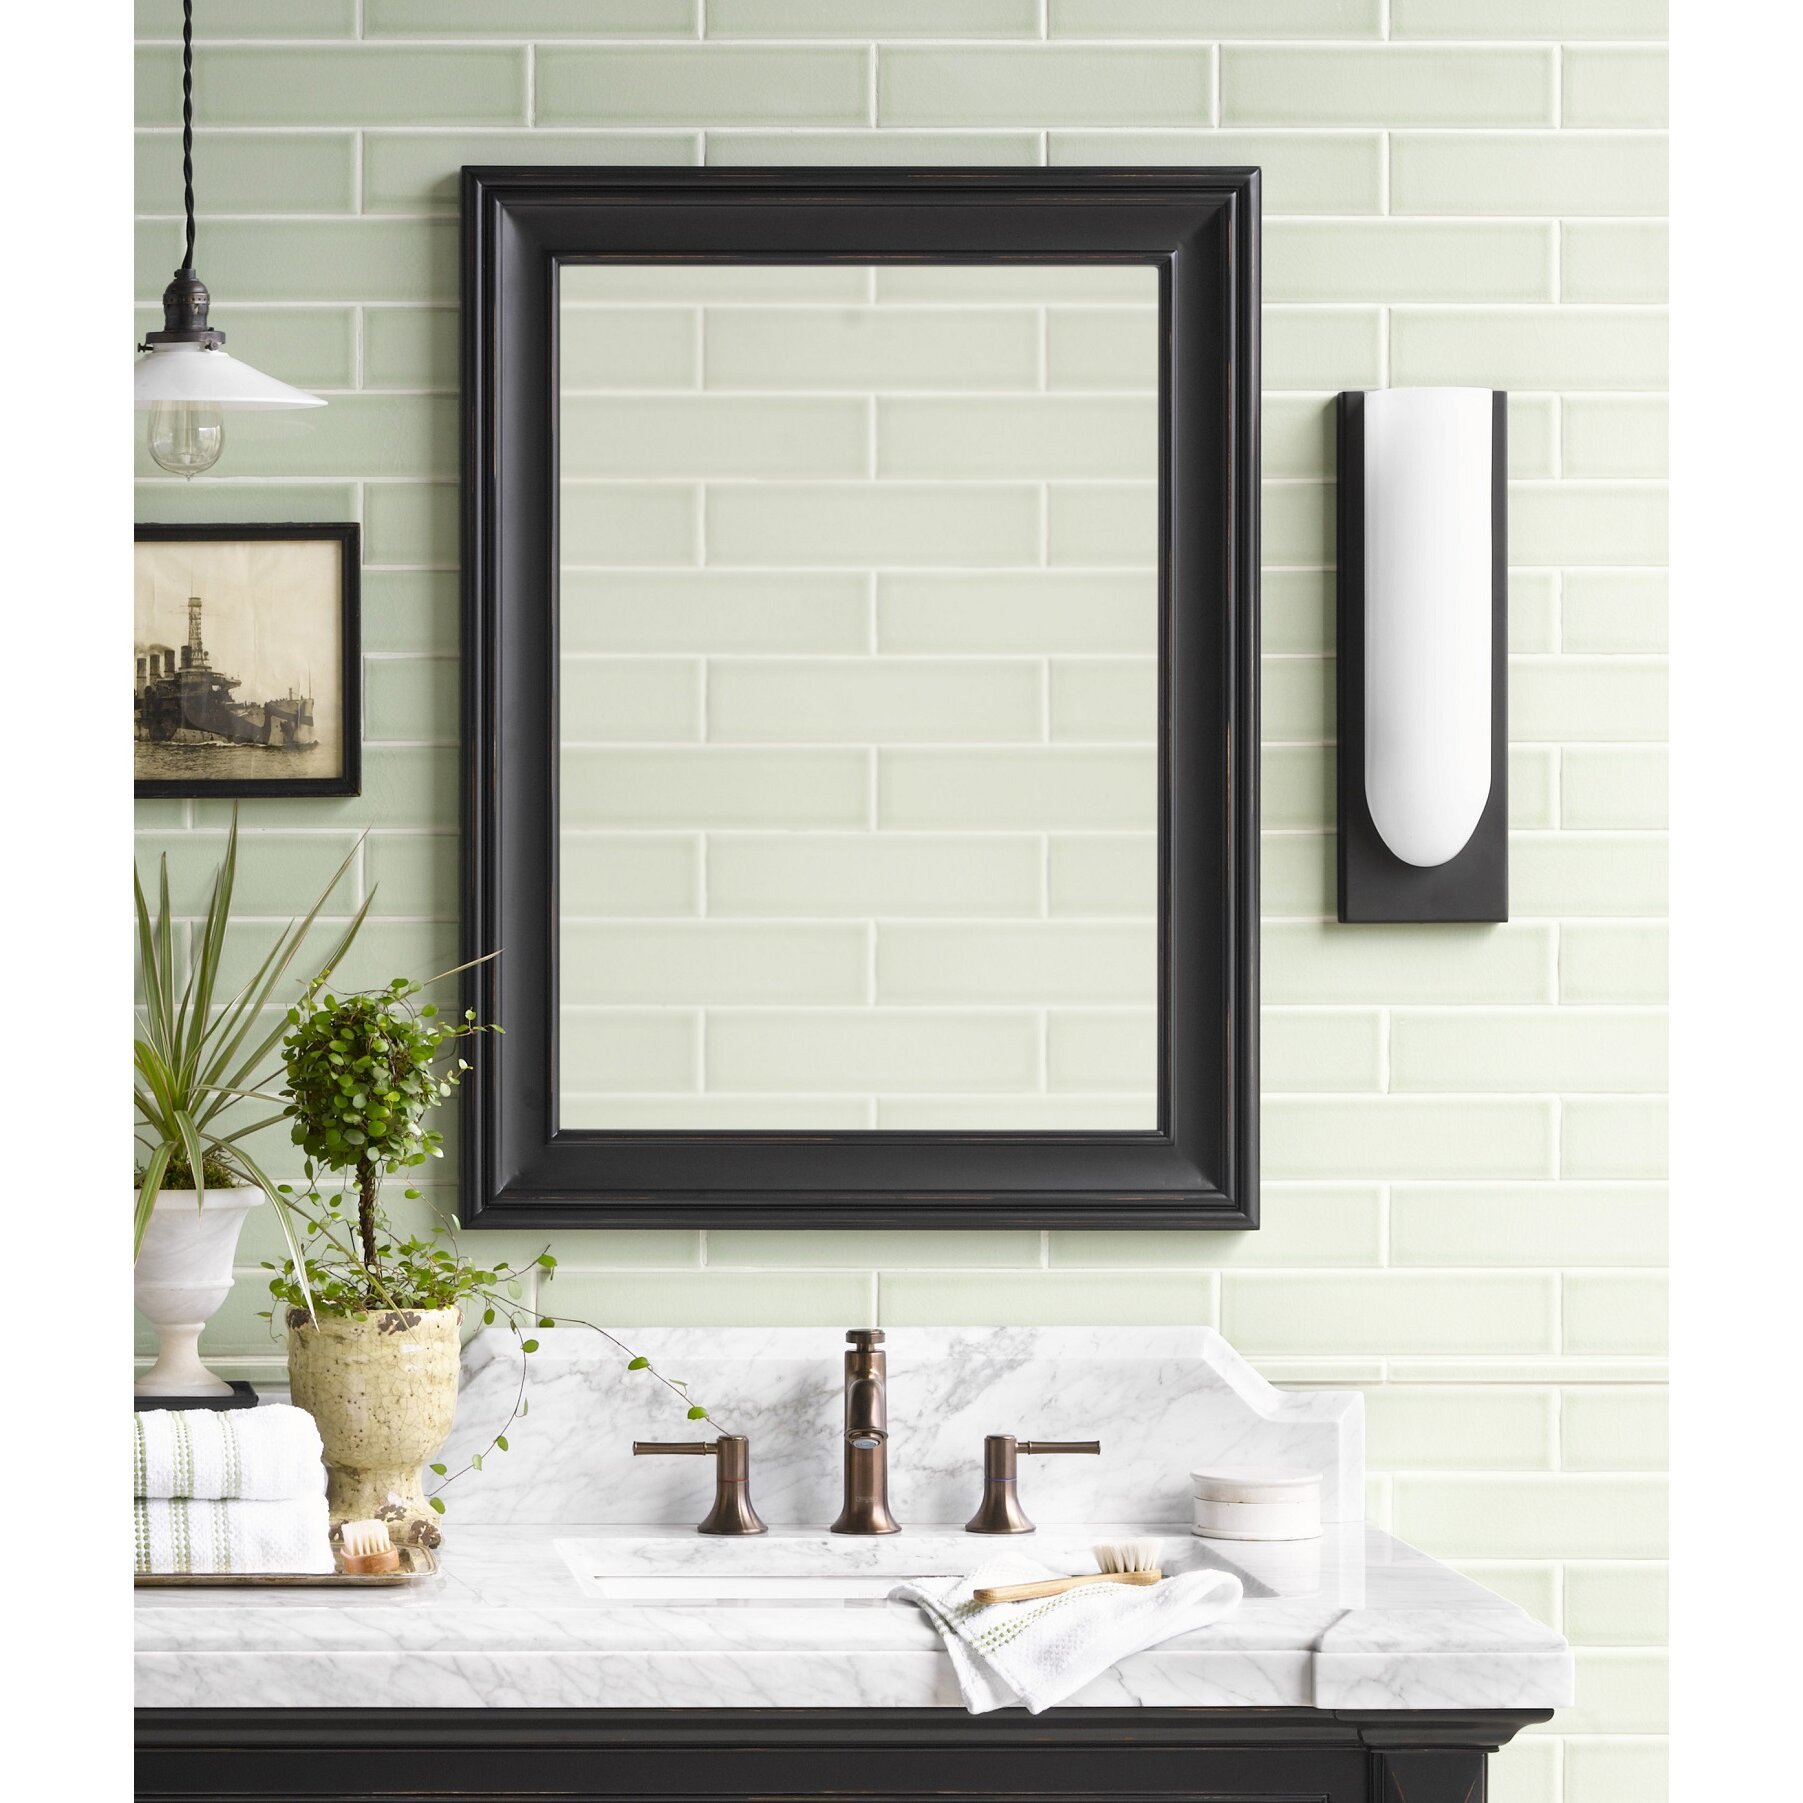 Black Framed Bathroom Mirror
 Traditional 24" x 32" Solid Wood Framed Bathroom Mirror in